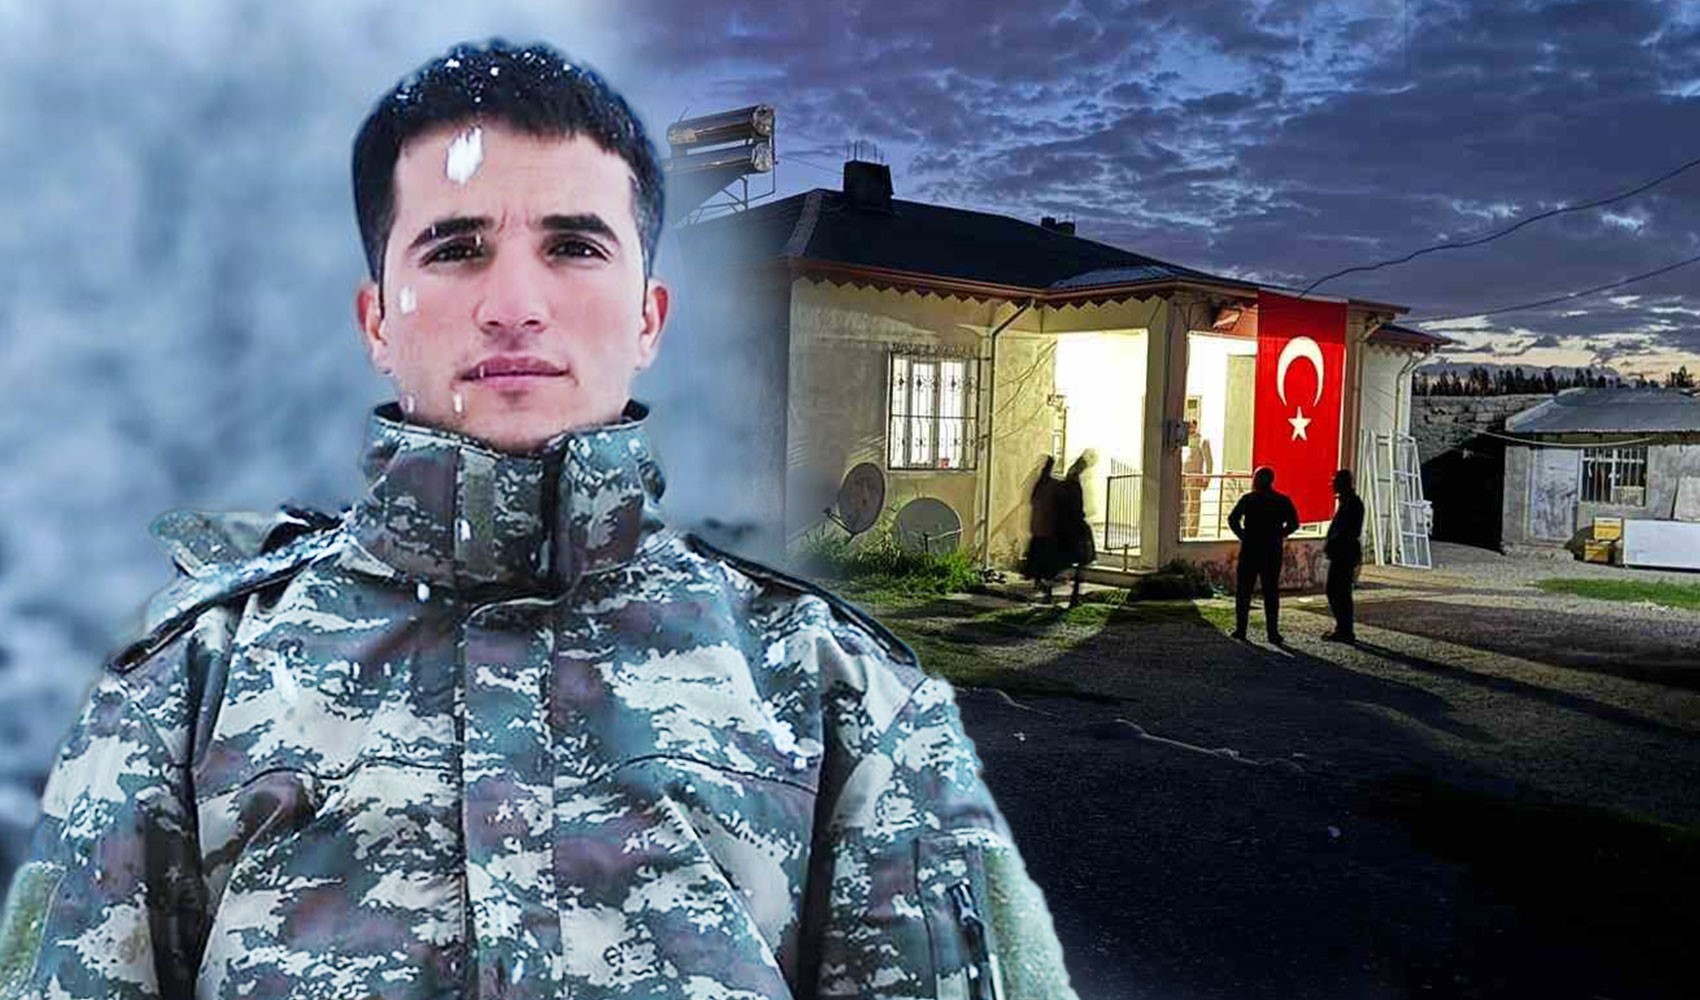 Iğdırlı şehit Vedat Zorba'nın baba evine Türk bayrağı asıldı